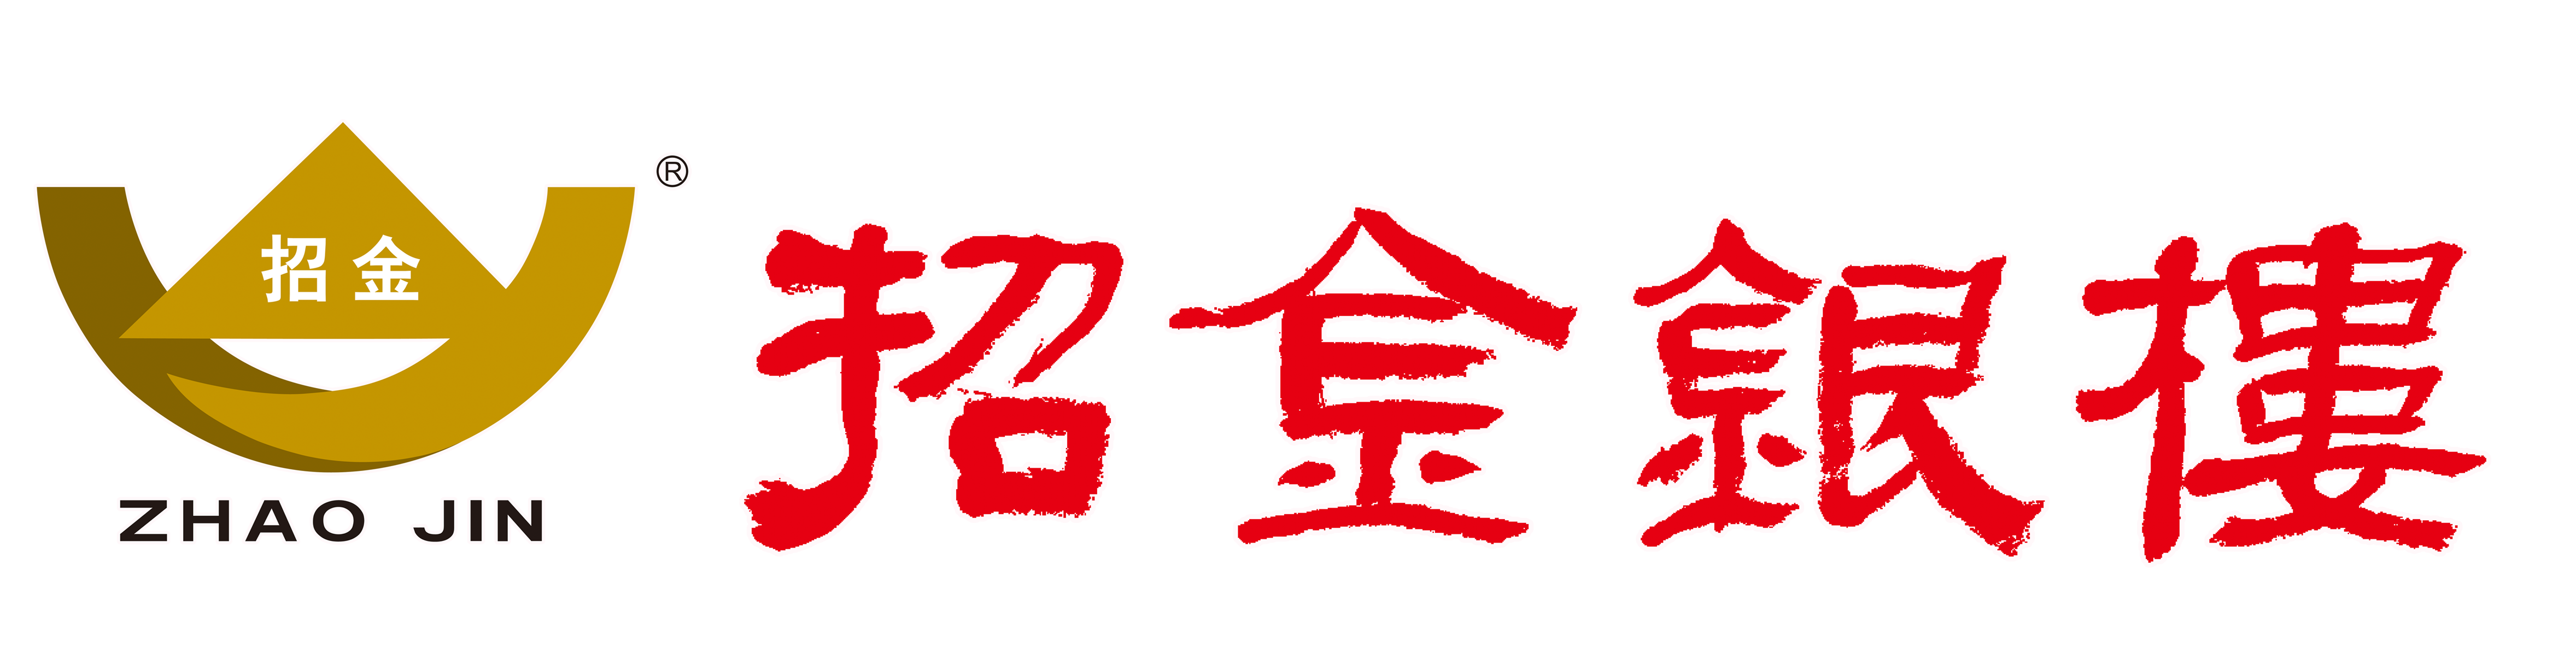 招金银楼logo图片图片